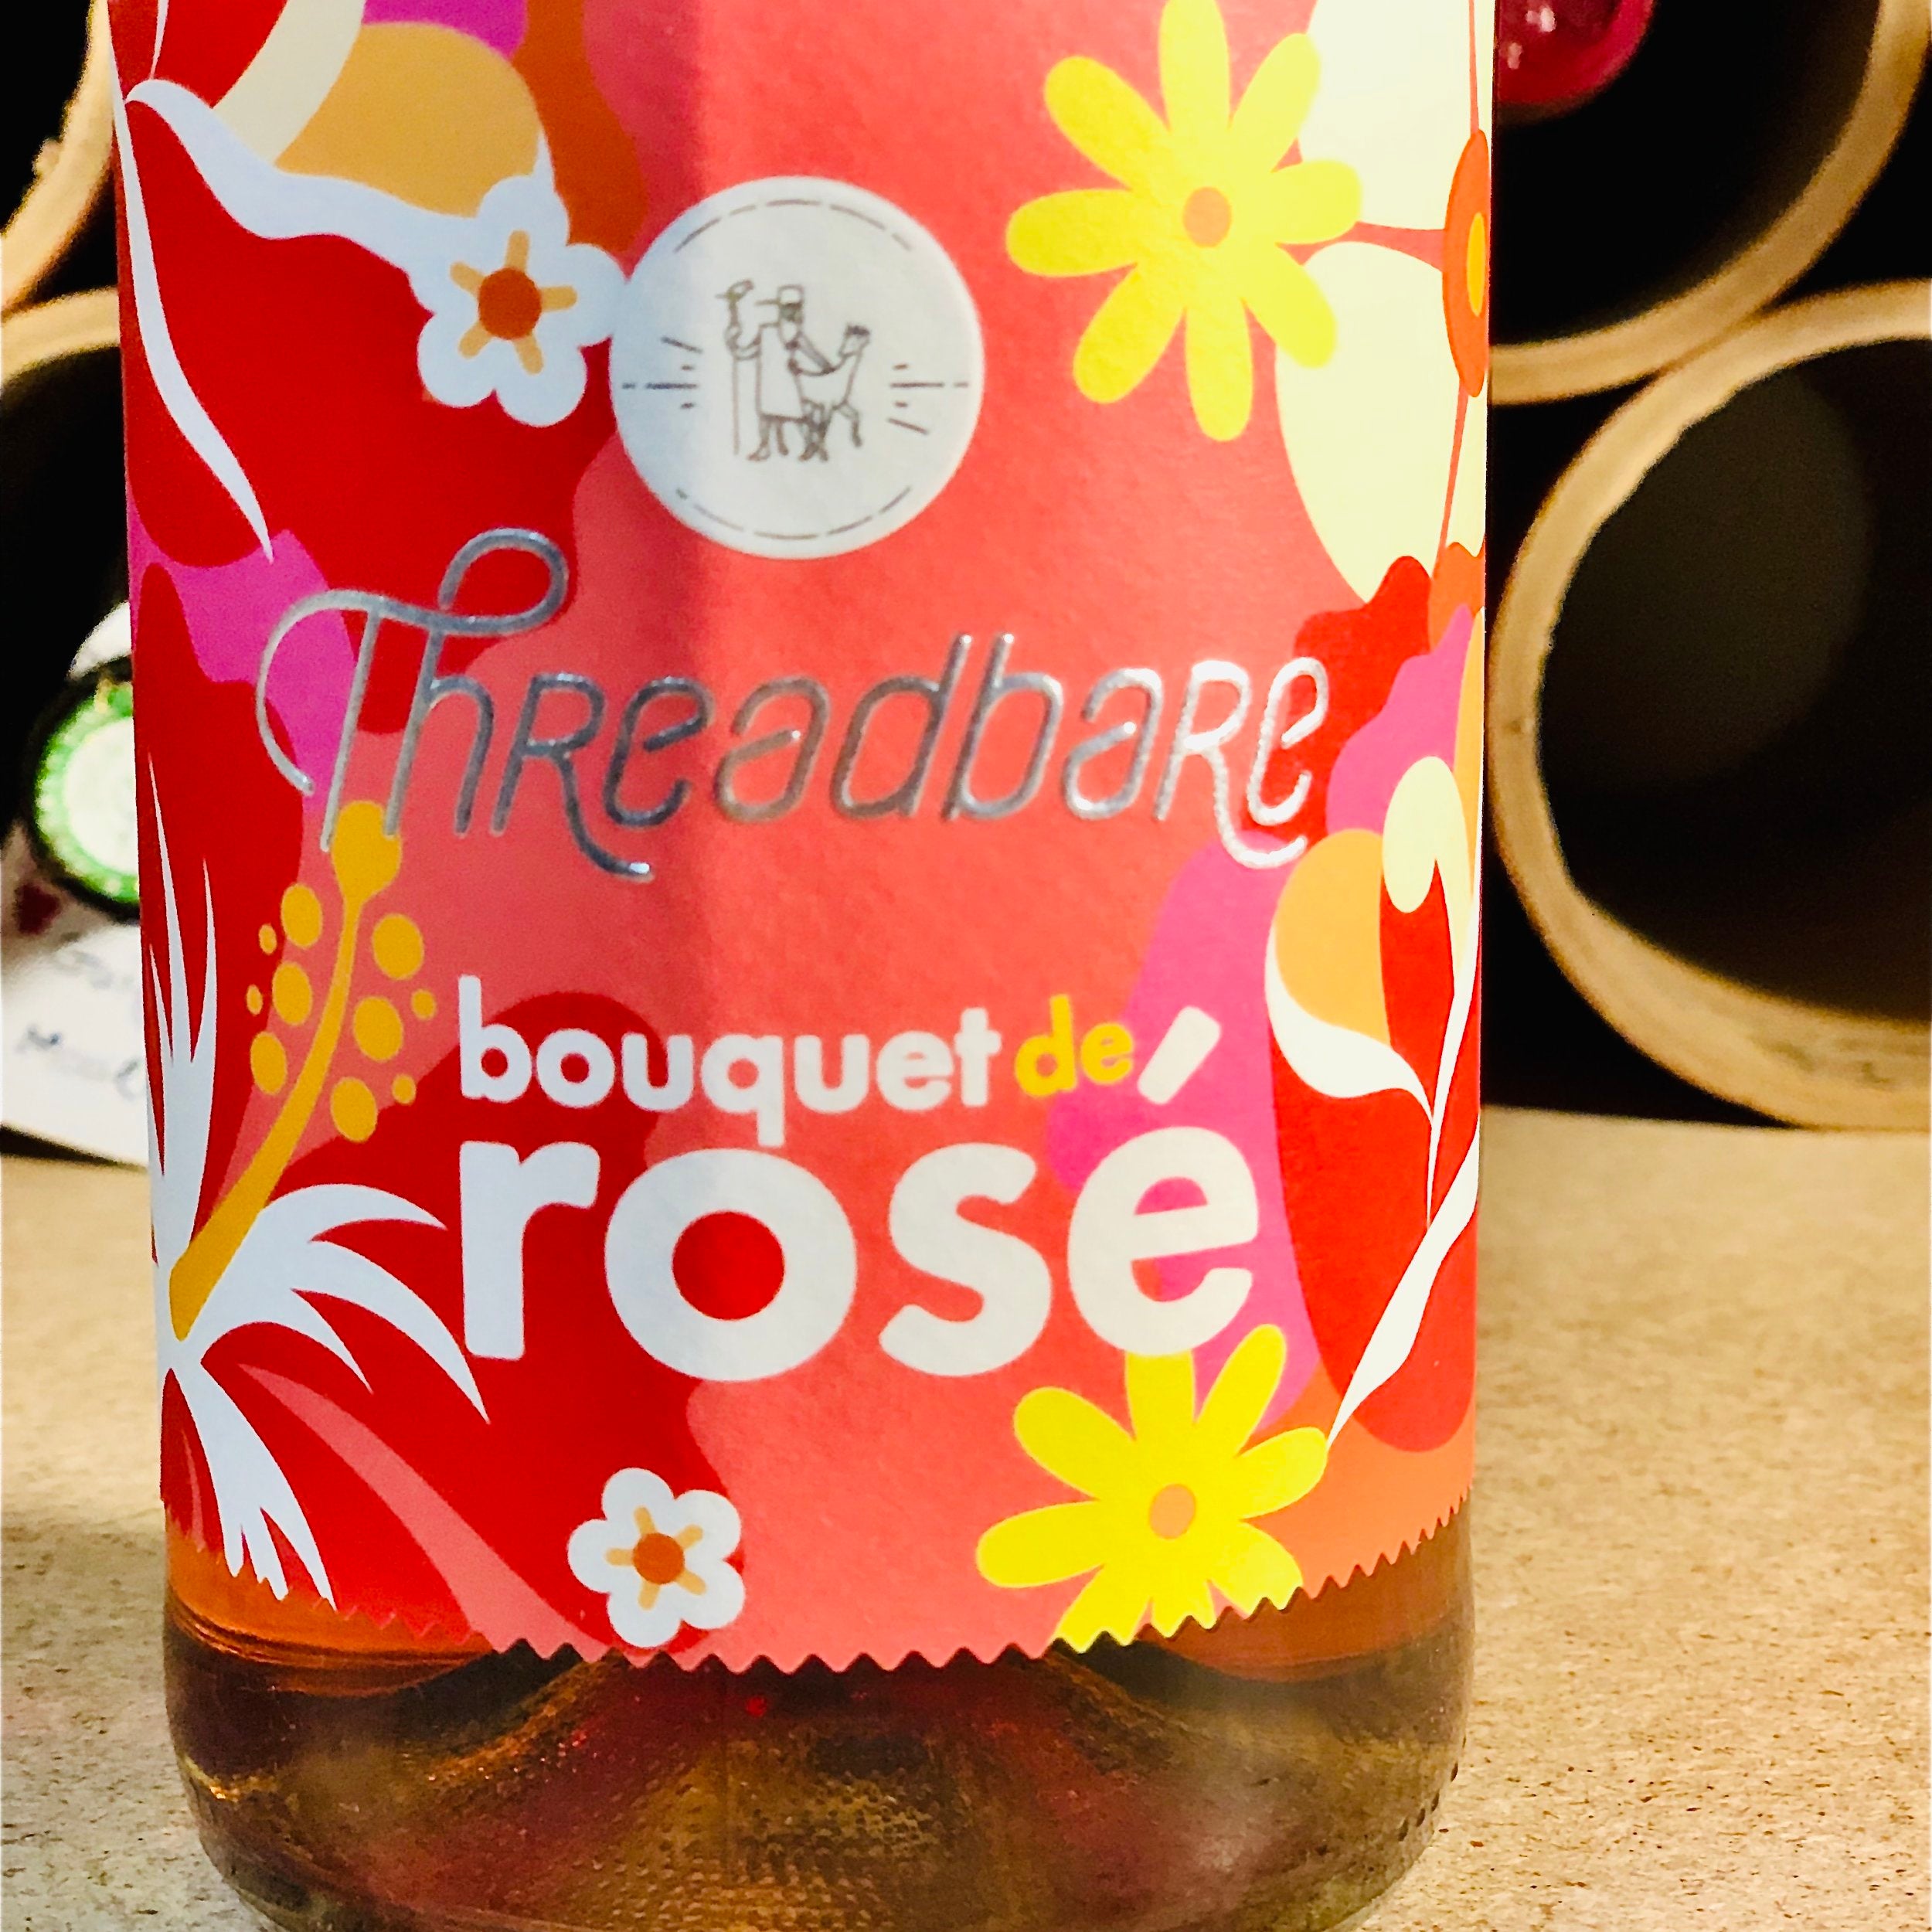 Threadbare Farmhouse, Bouquet de Rosé, Hard Apple Cider (750ml)